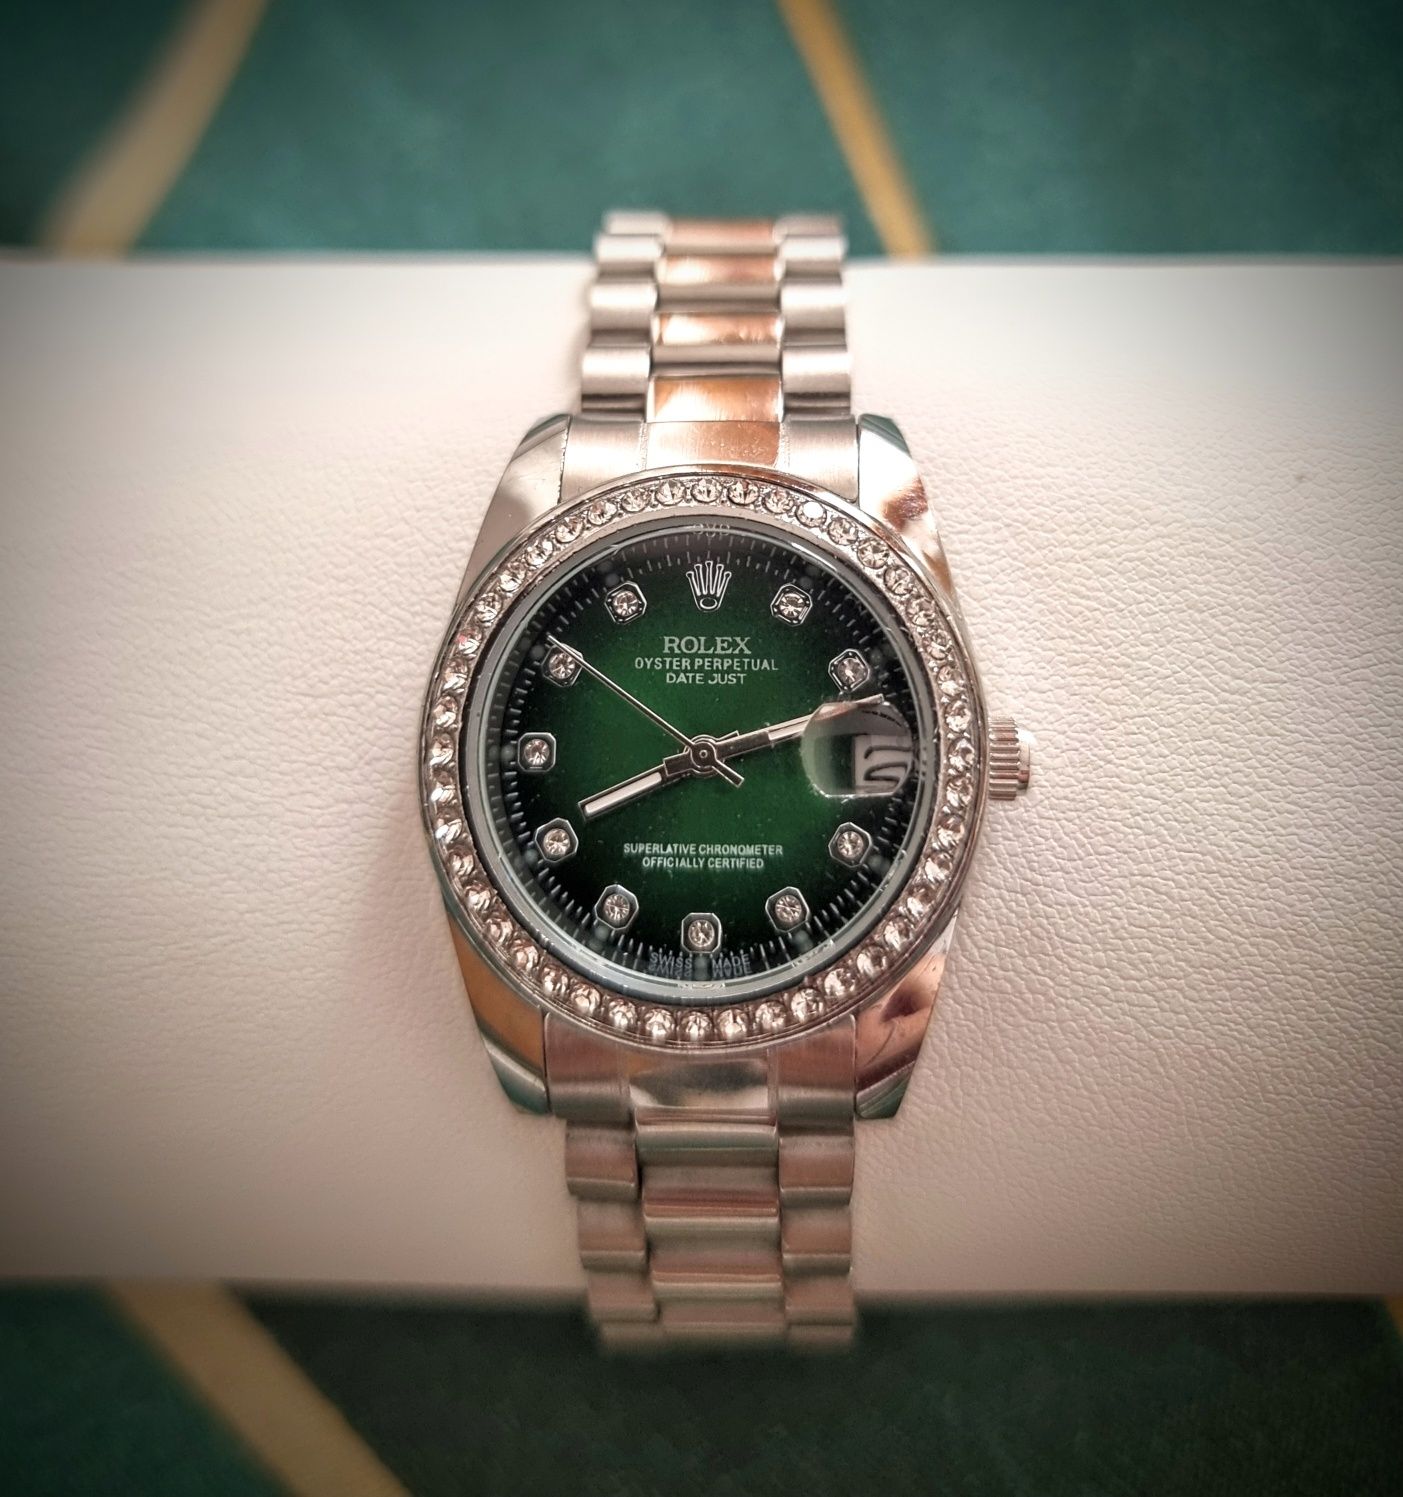 Ceas dama Rolex Oyster Perpetual Datejust Verde


Vand un ceas de dama